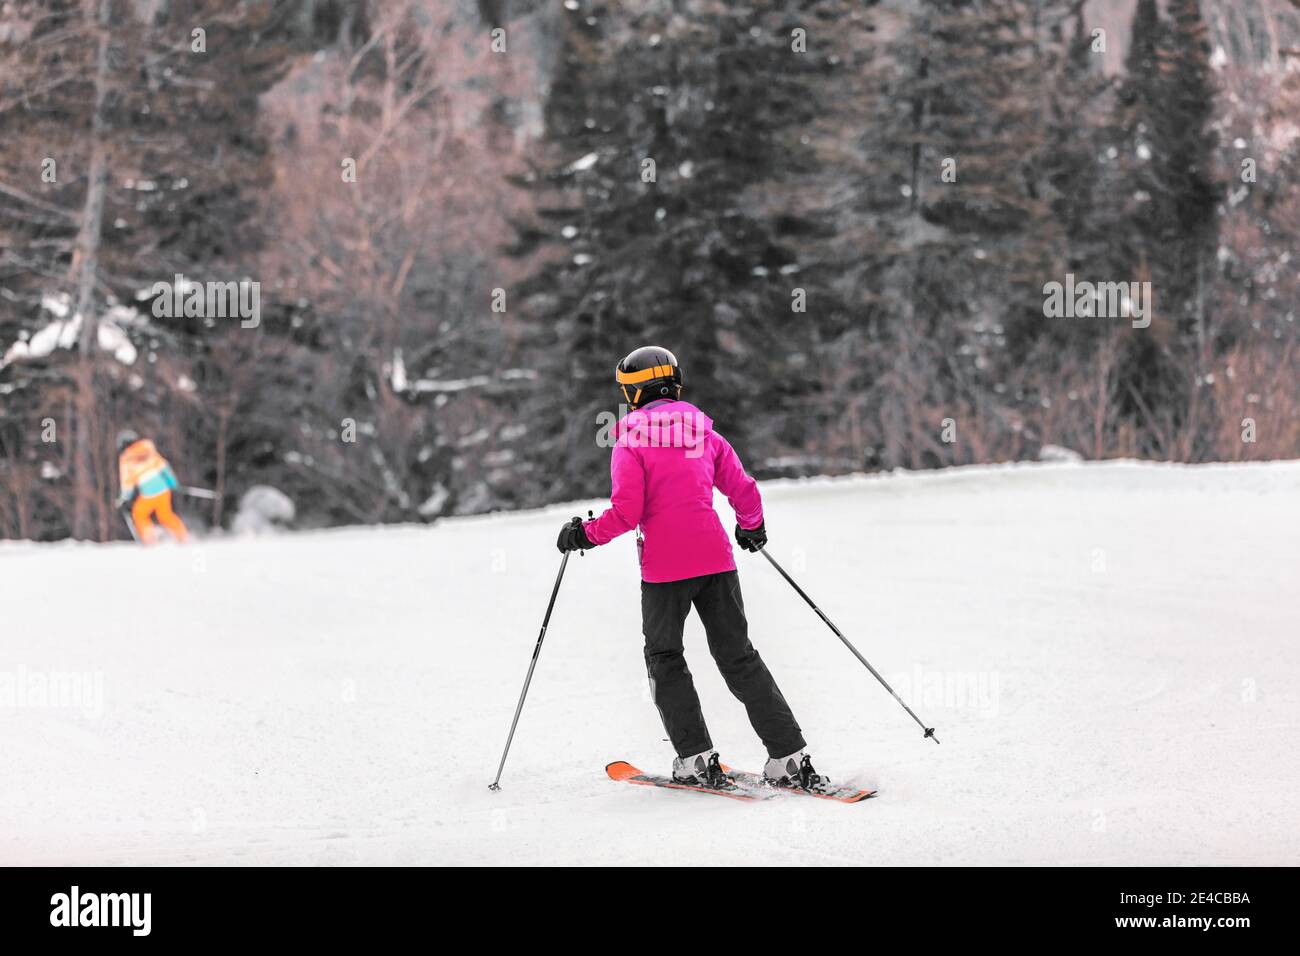 Skifahrer Frau Skifahren lernen, auf Berghang Skifahren. Wintersport Outdoor-Aktivitäten. Mädchen von hinten in rosa Jacke und Brille, Helm, Skier, Stöcke Stockfoto